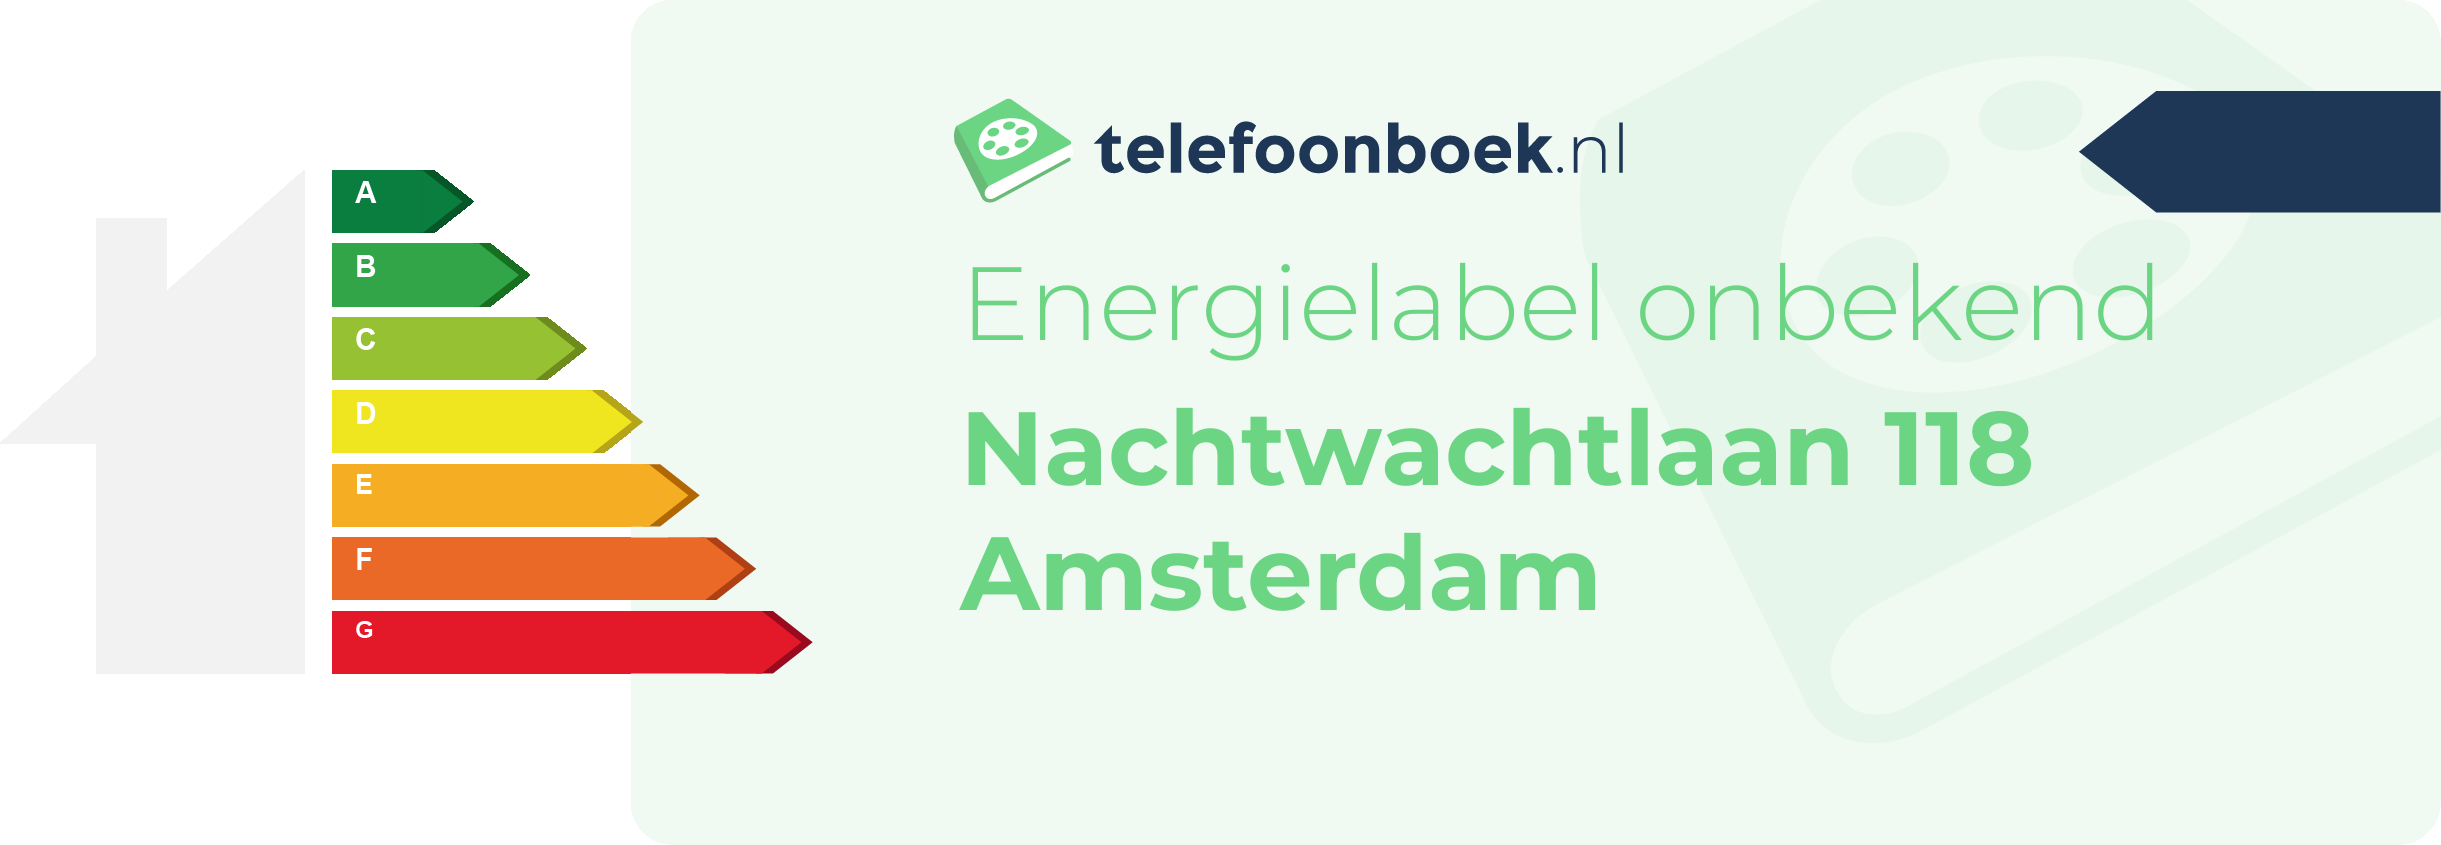 Energielabel Nachtwachtlaan 118 Amsterdam